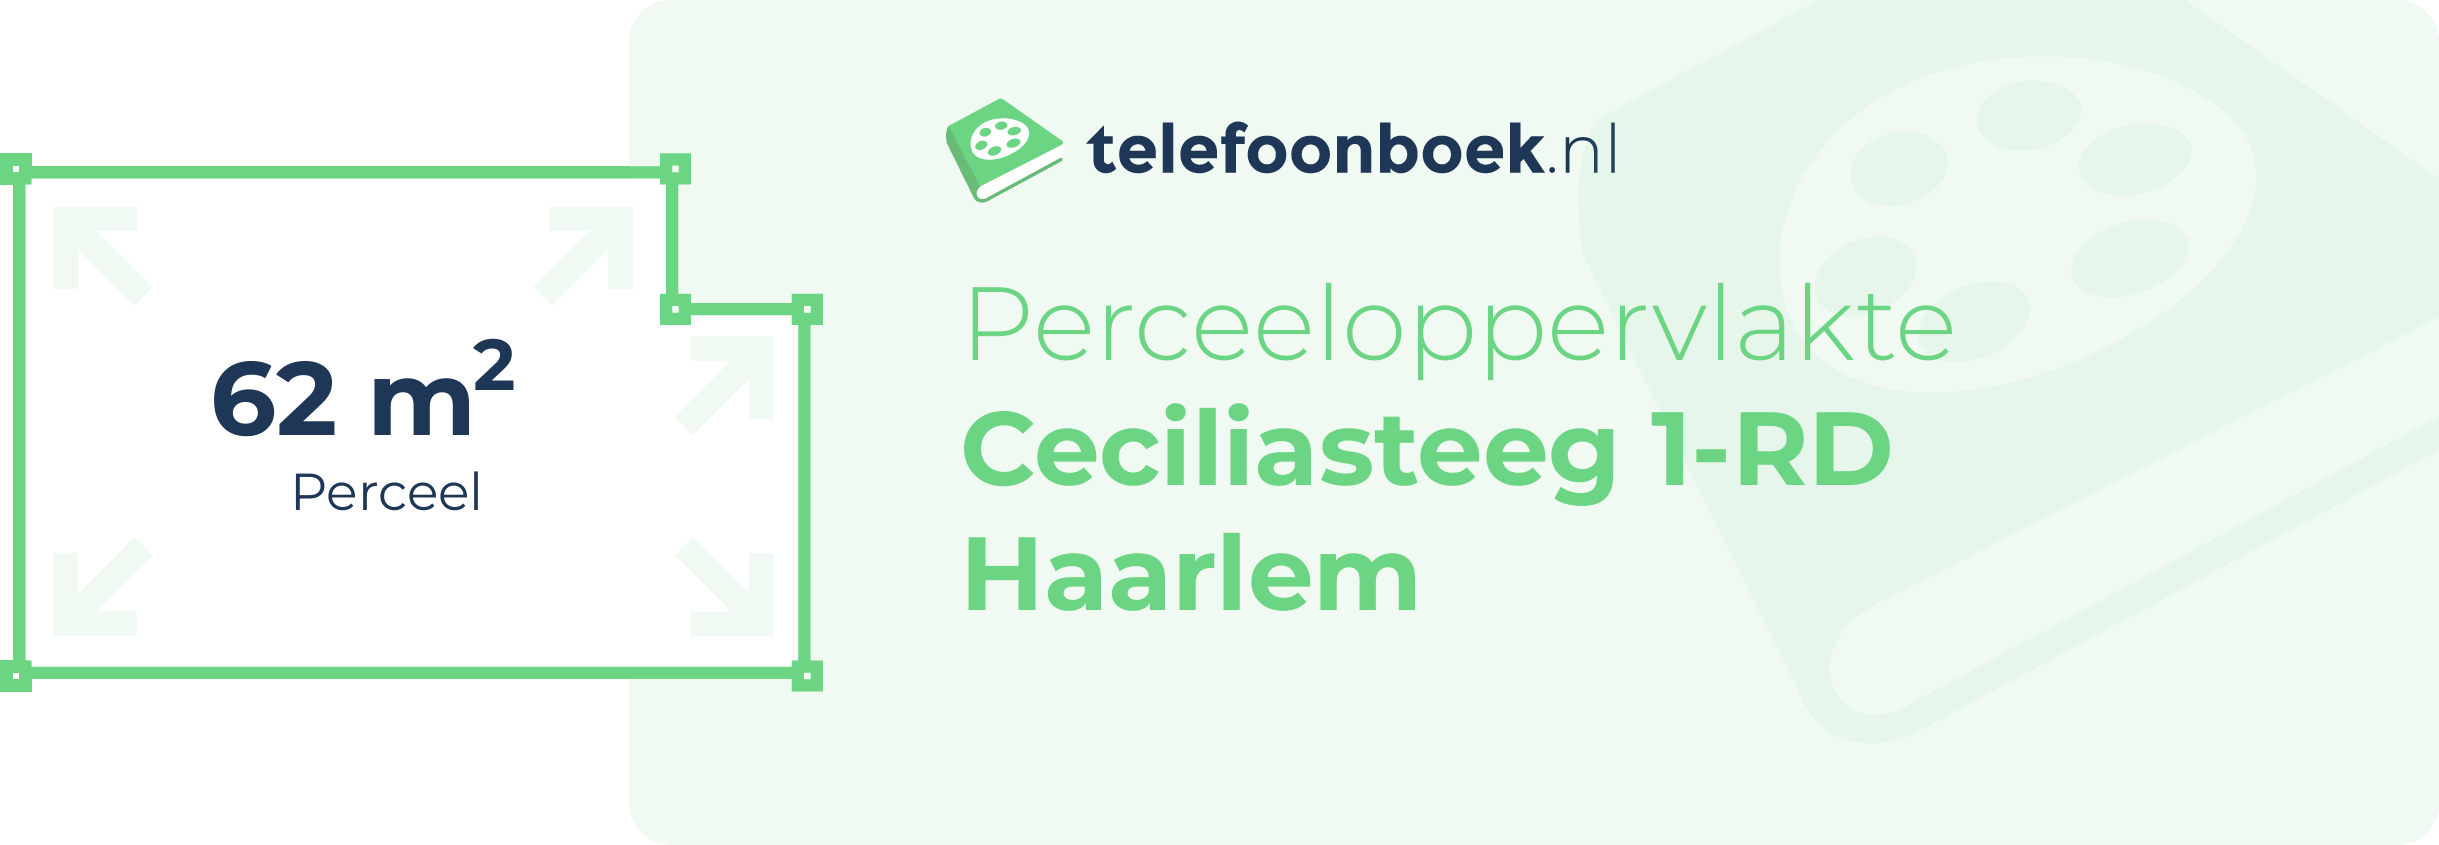 Perceeloppervlakte Ceciliasteeg 1-RD Haarlem